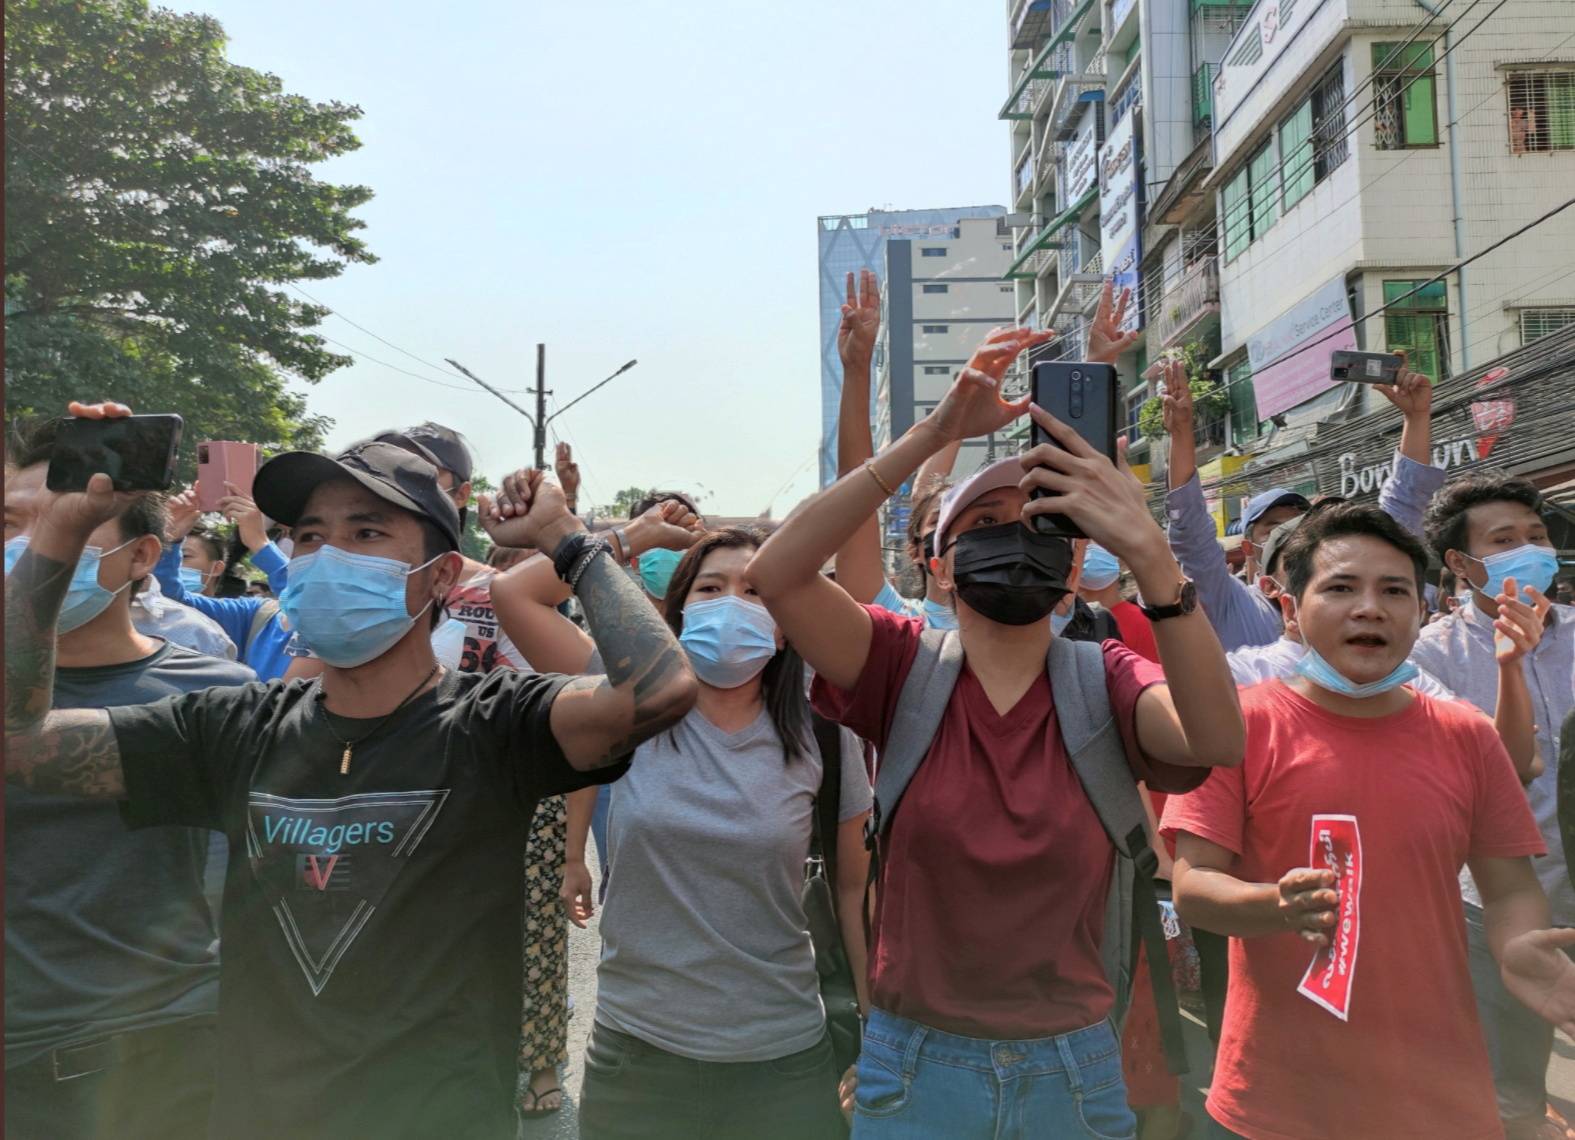 म्यामांर में तख्तापलट के बाद विरोध प्रदर्शनों को रोकने के लिए इंटरनेट बंद कर दिया गया था. (फोटो: रॉयटर्स)